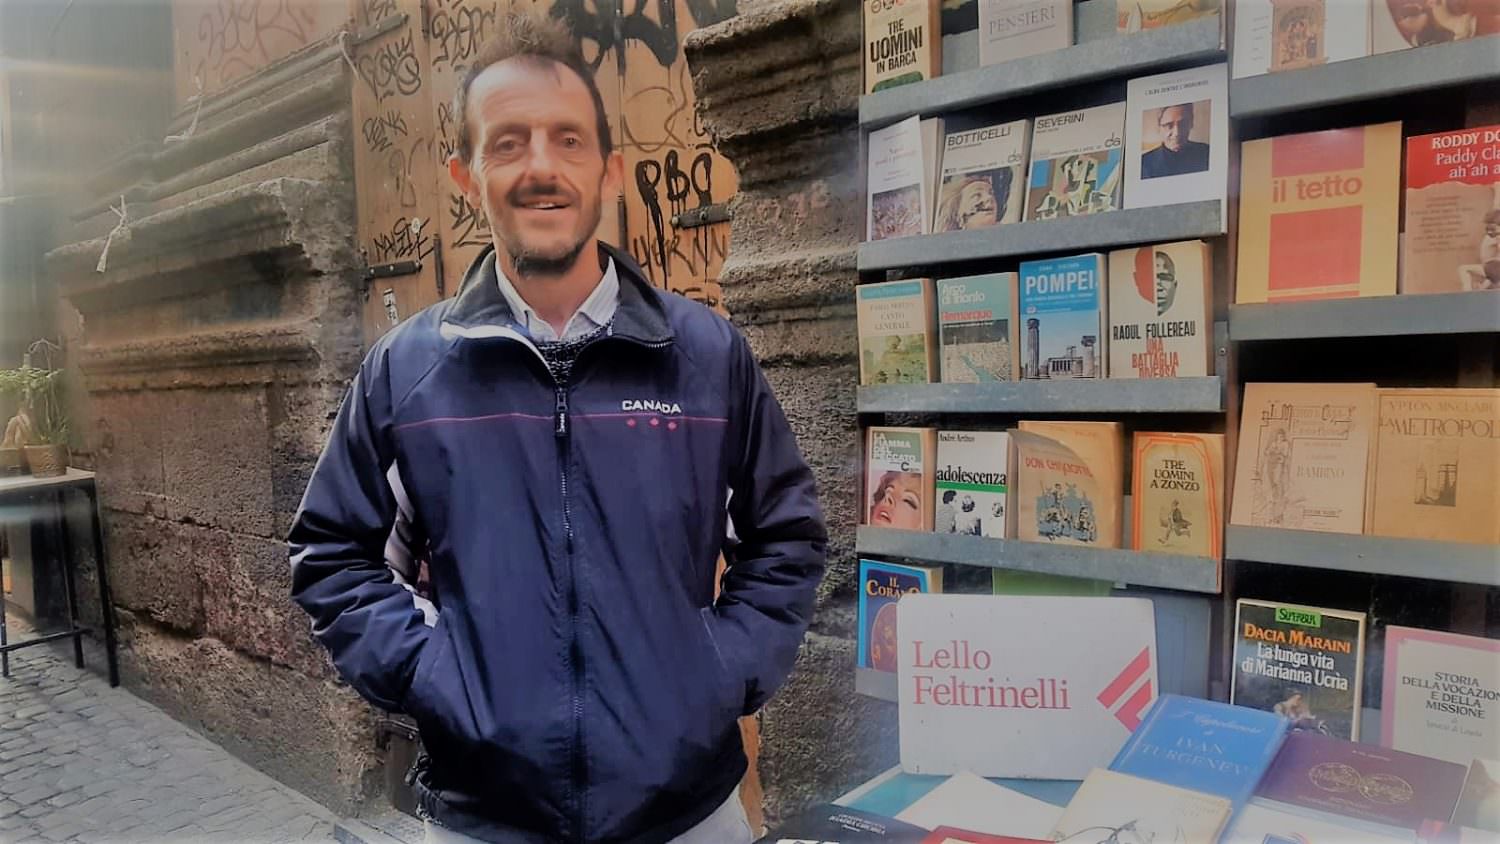 A Spaccanapoli trovi un tesoro: libri belli a 1 euro da Lello Feltrinelli -  Esplora Napoli